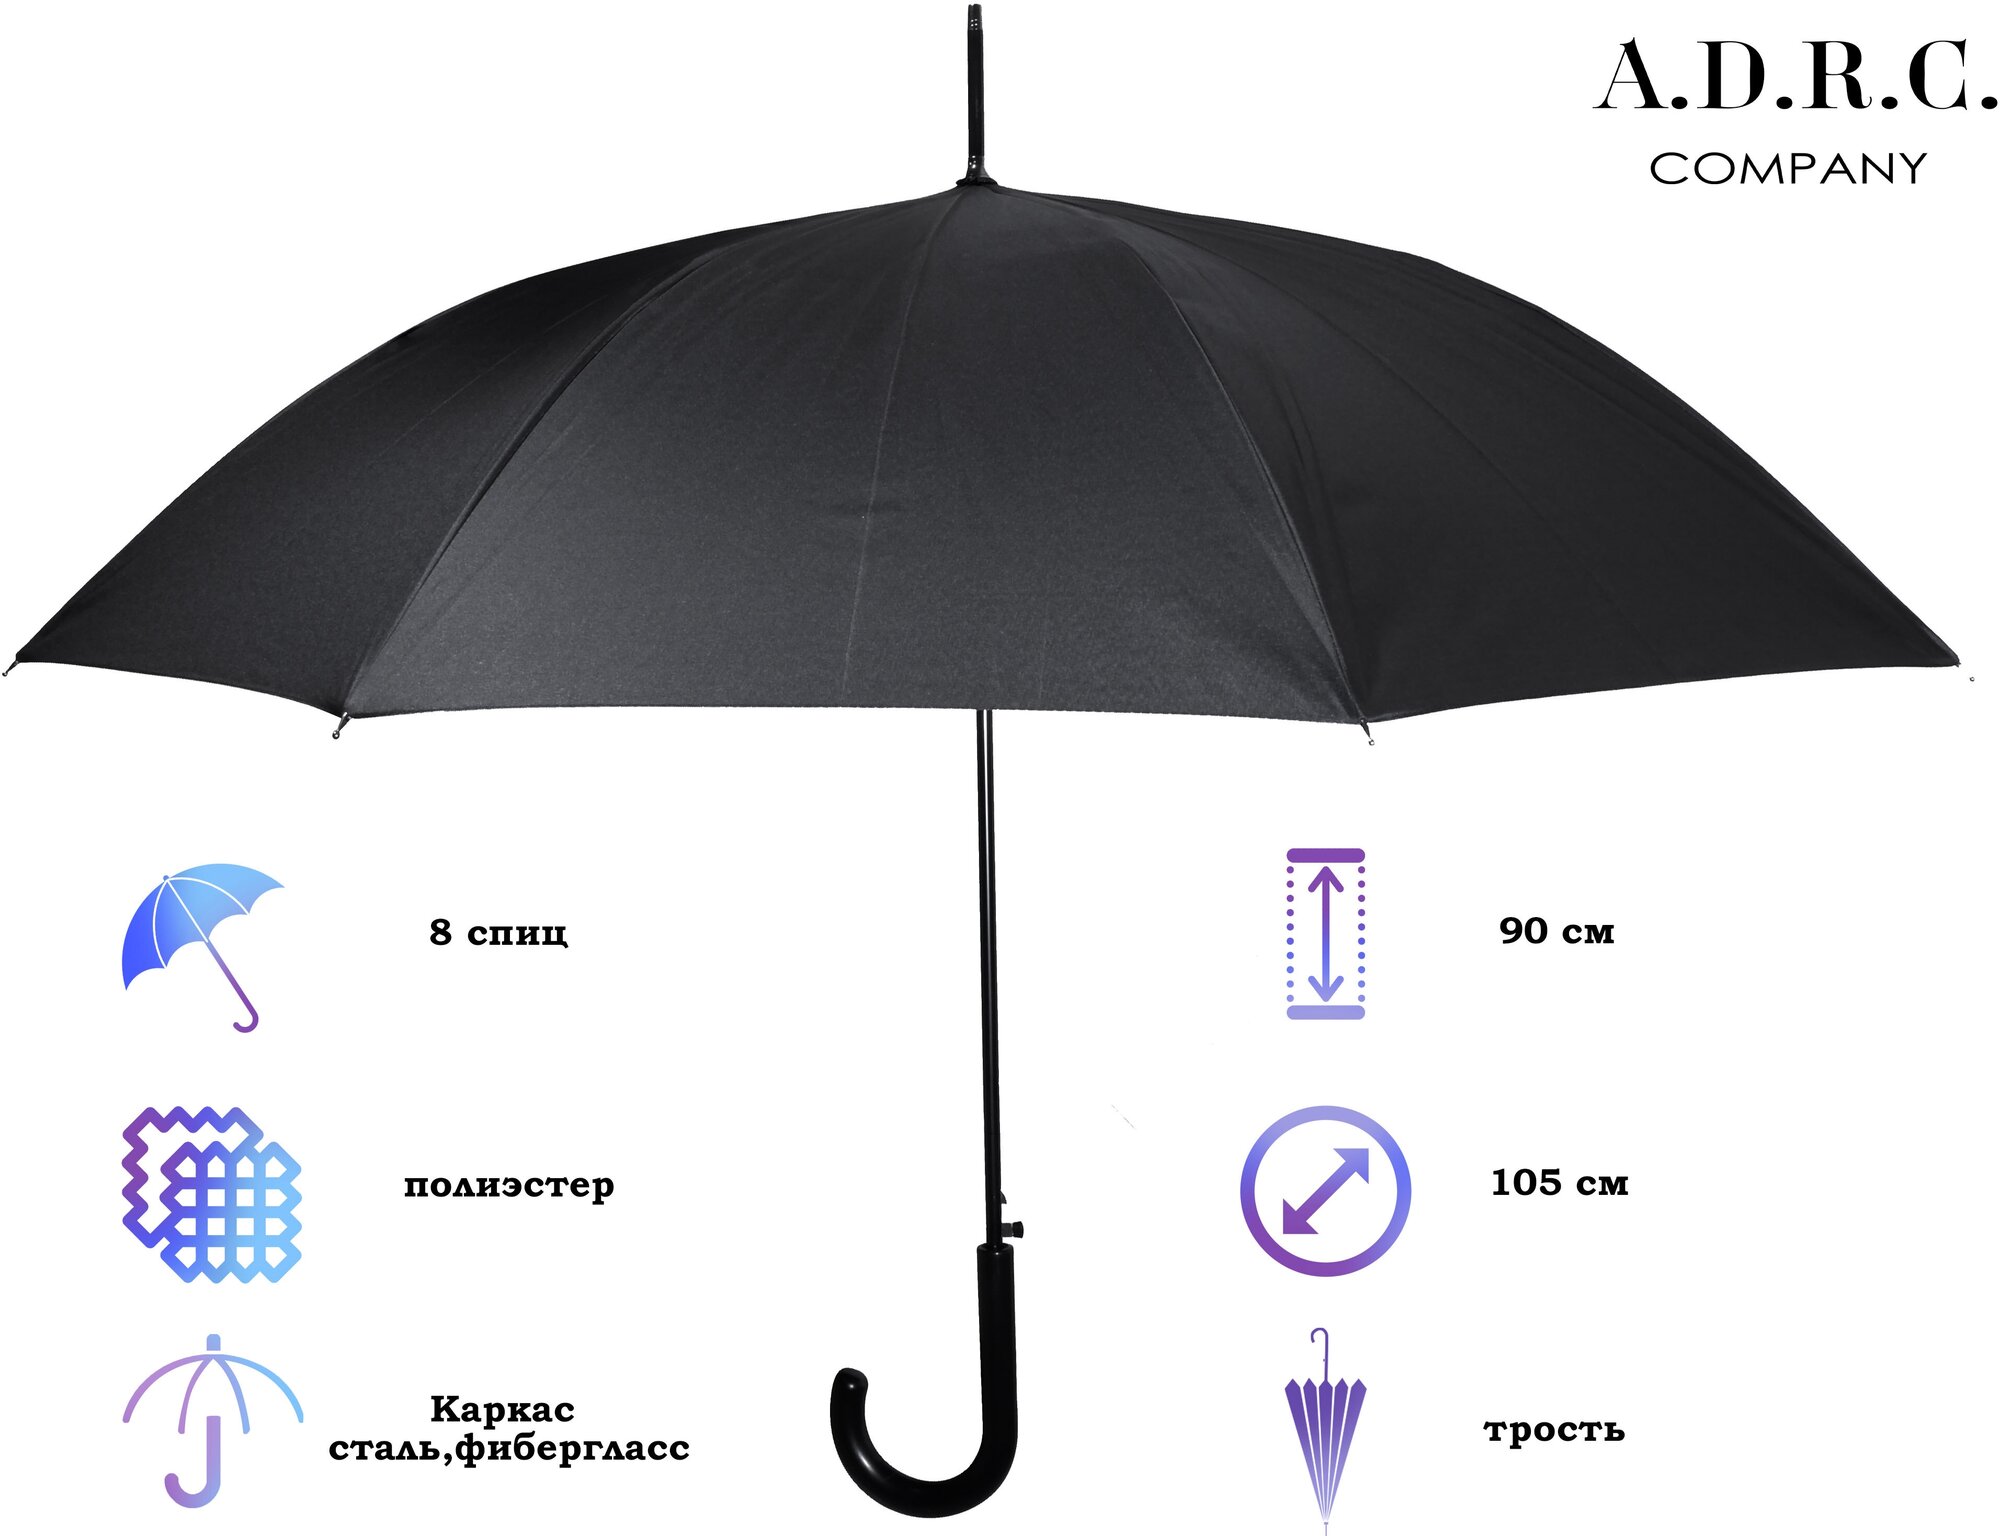 Тестовый образец зонт-трость (Картинка)